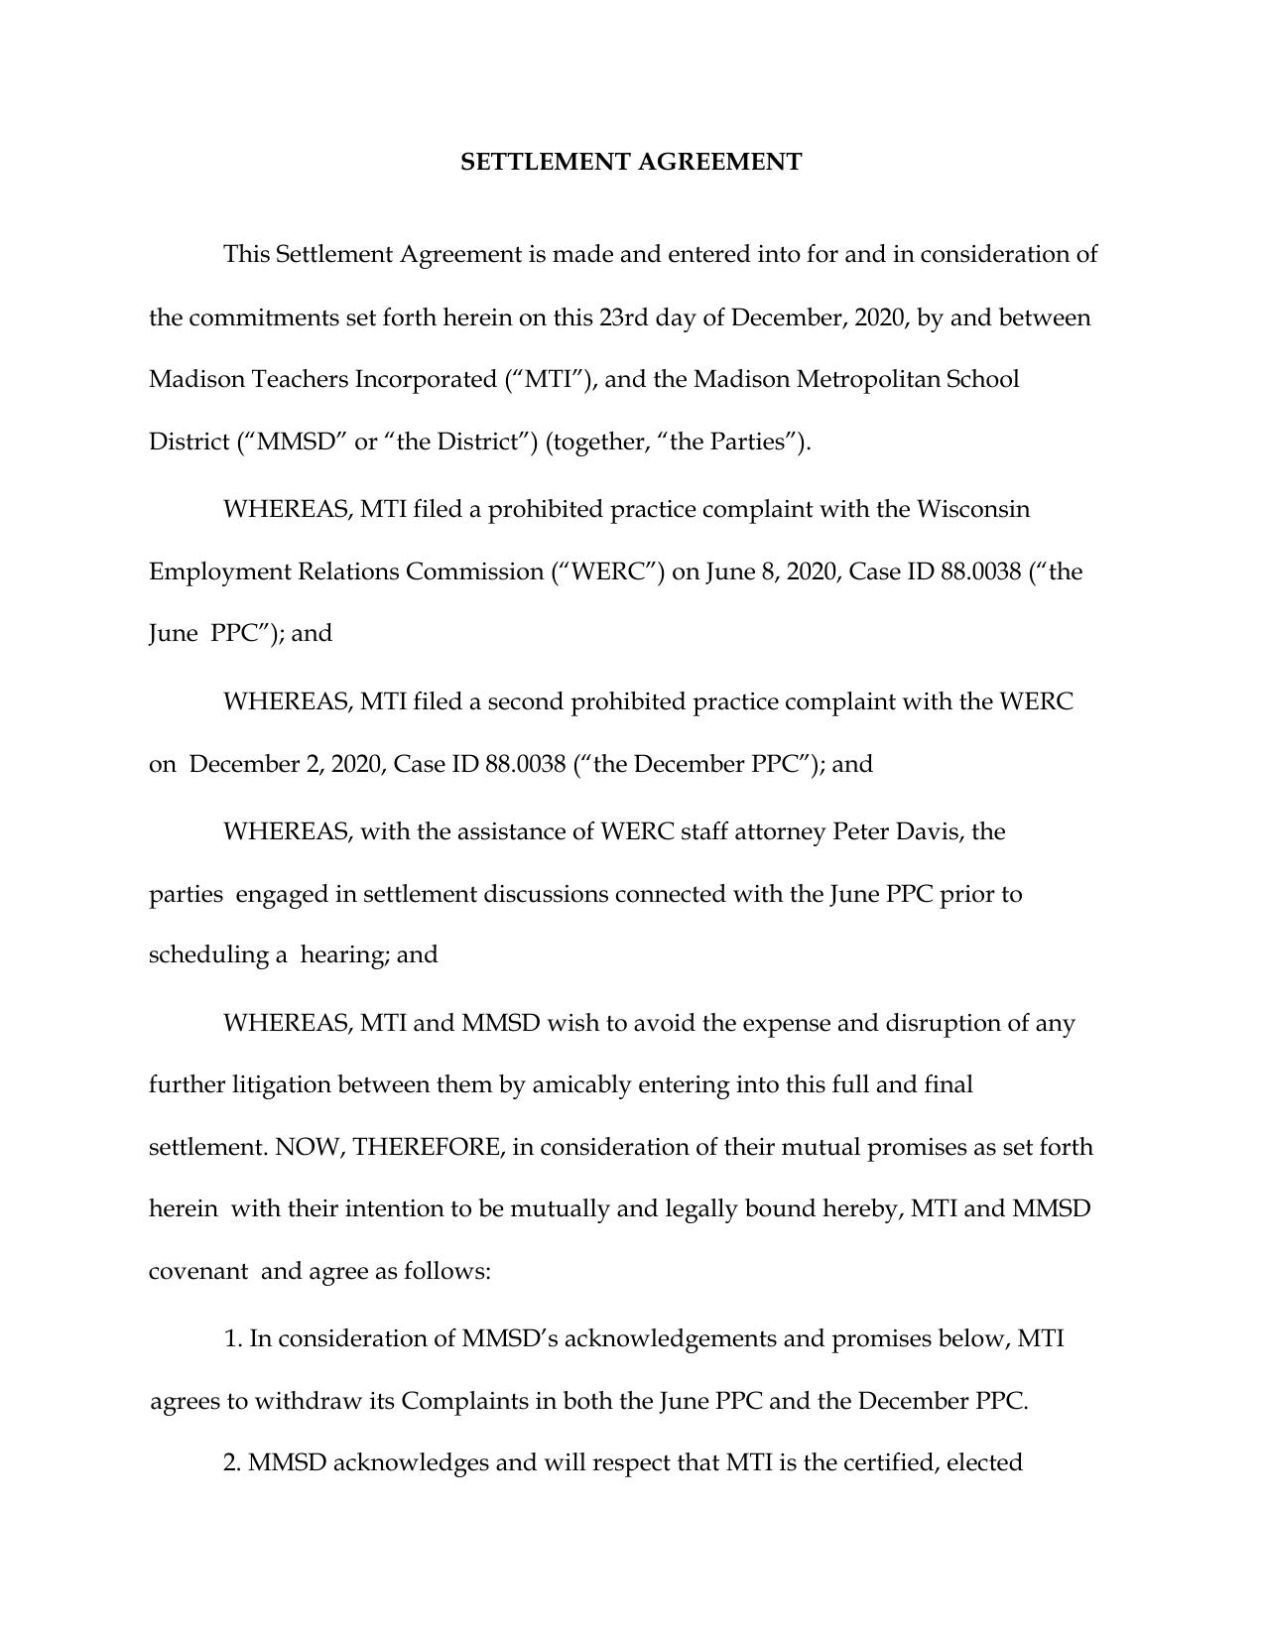 MMSD, MTI settlement agreement